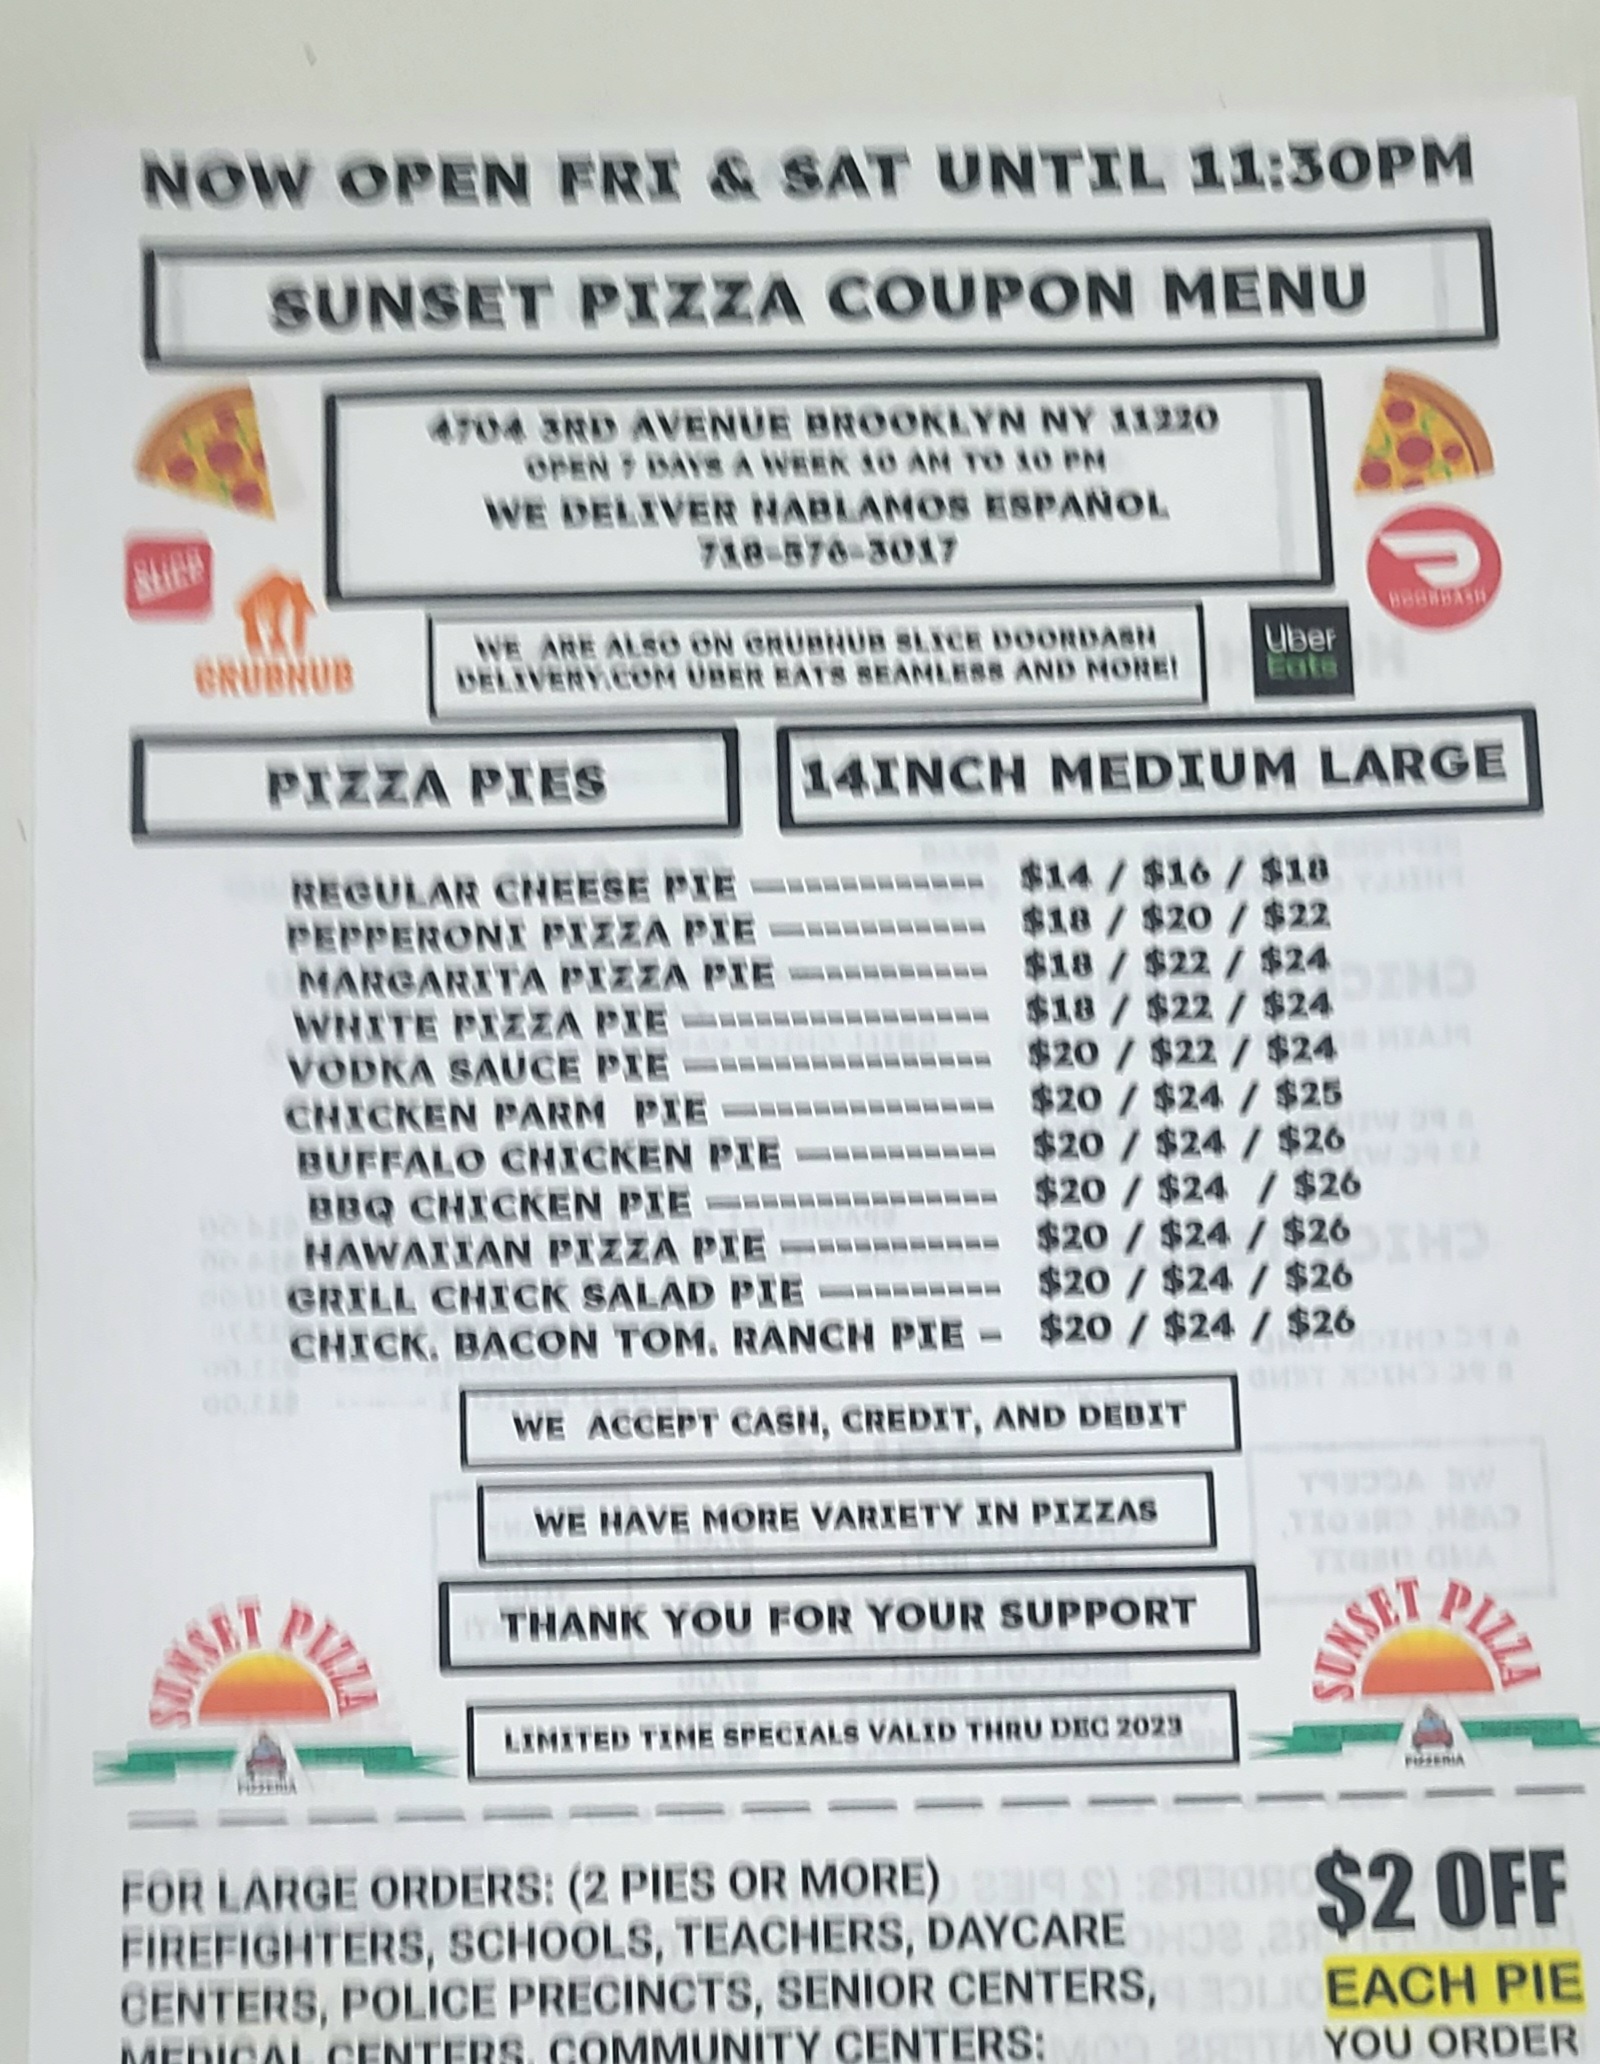 Sunset Pizza 4704 3rd Ave, Brooklyn, NY 11220